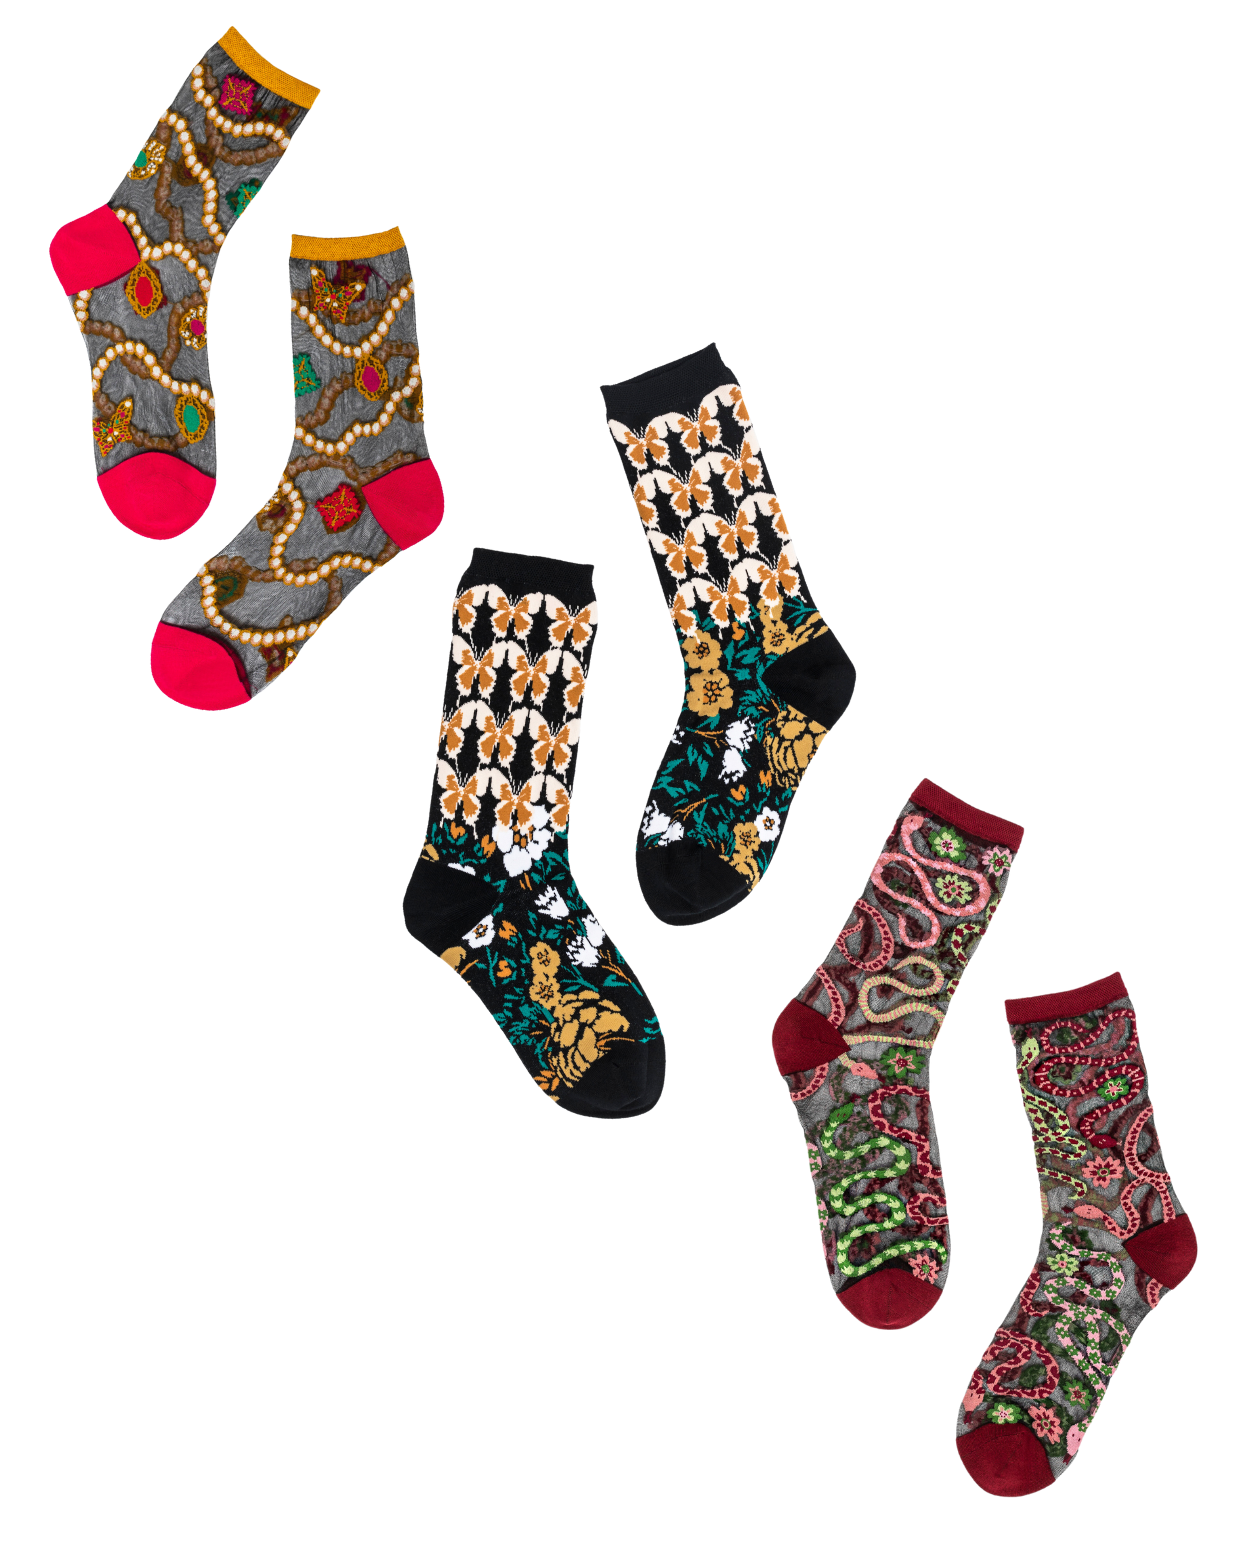 Taylor Alison Swift Socks Winter Popular Singer Stockings Novelty Unisex  Soft Socks Custom Outdoor Sports Non-Slip Socks